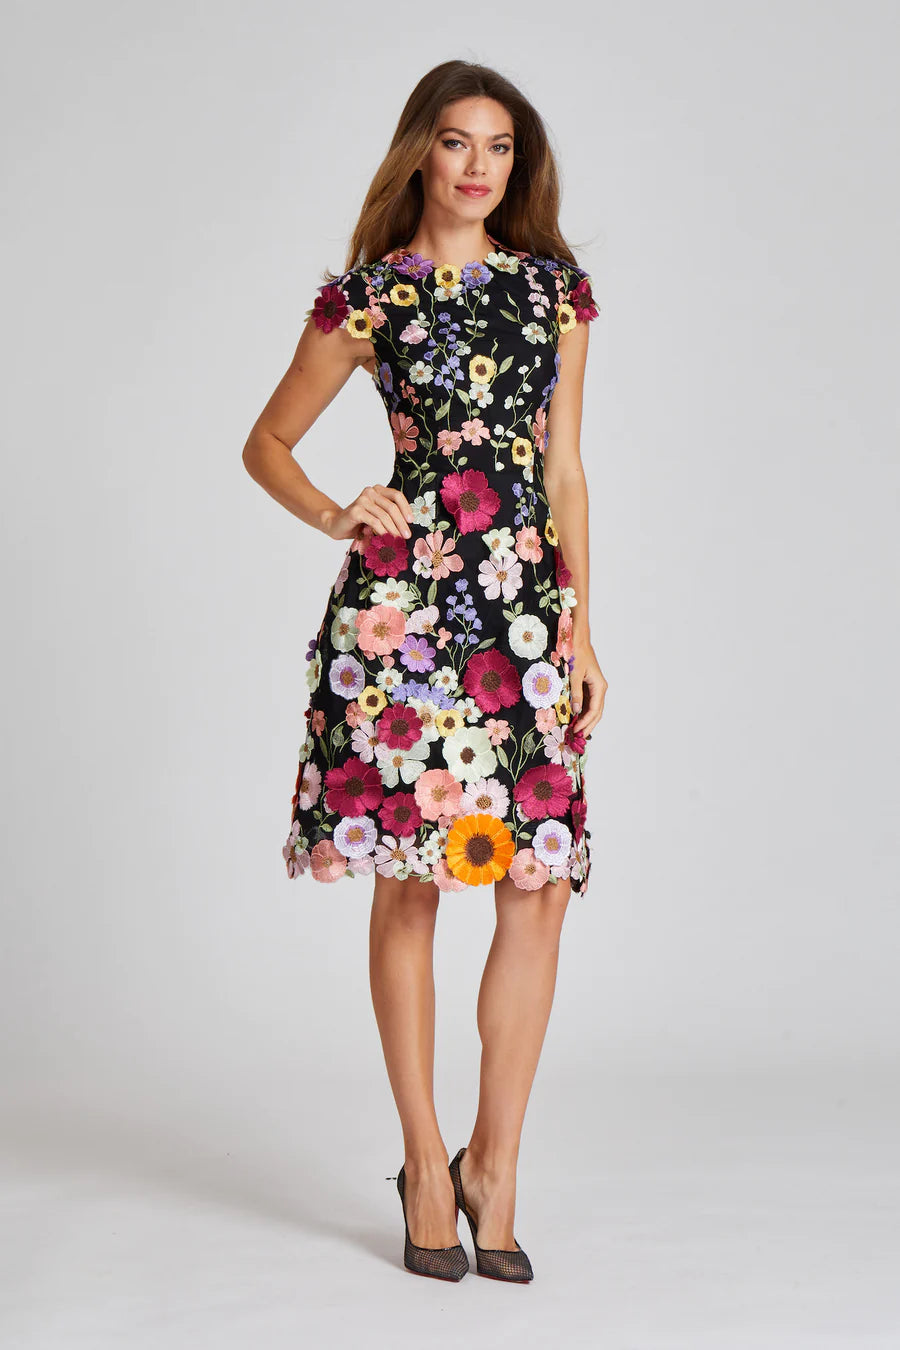 Teri Jon 3D Appliqued Floral Lace Fit N Flare Dress